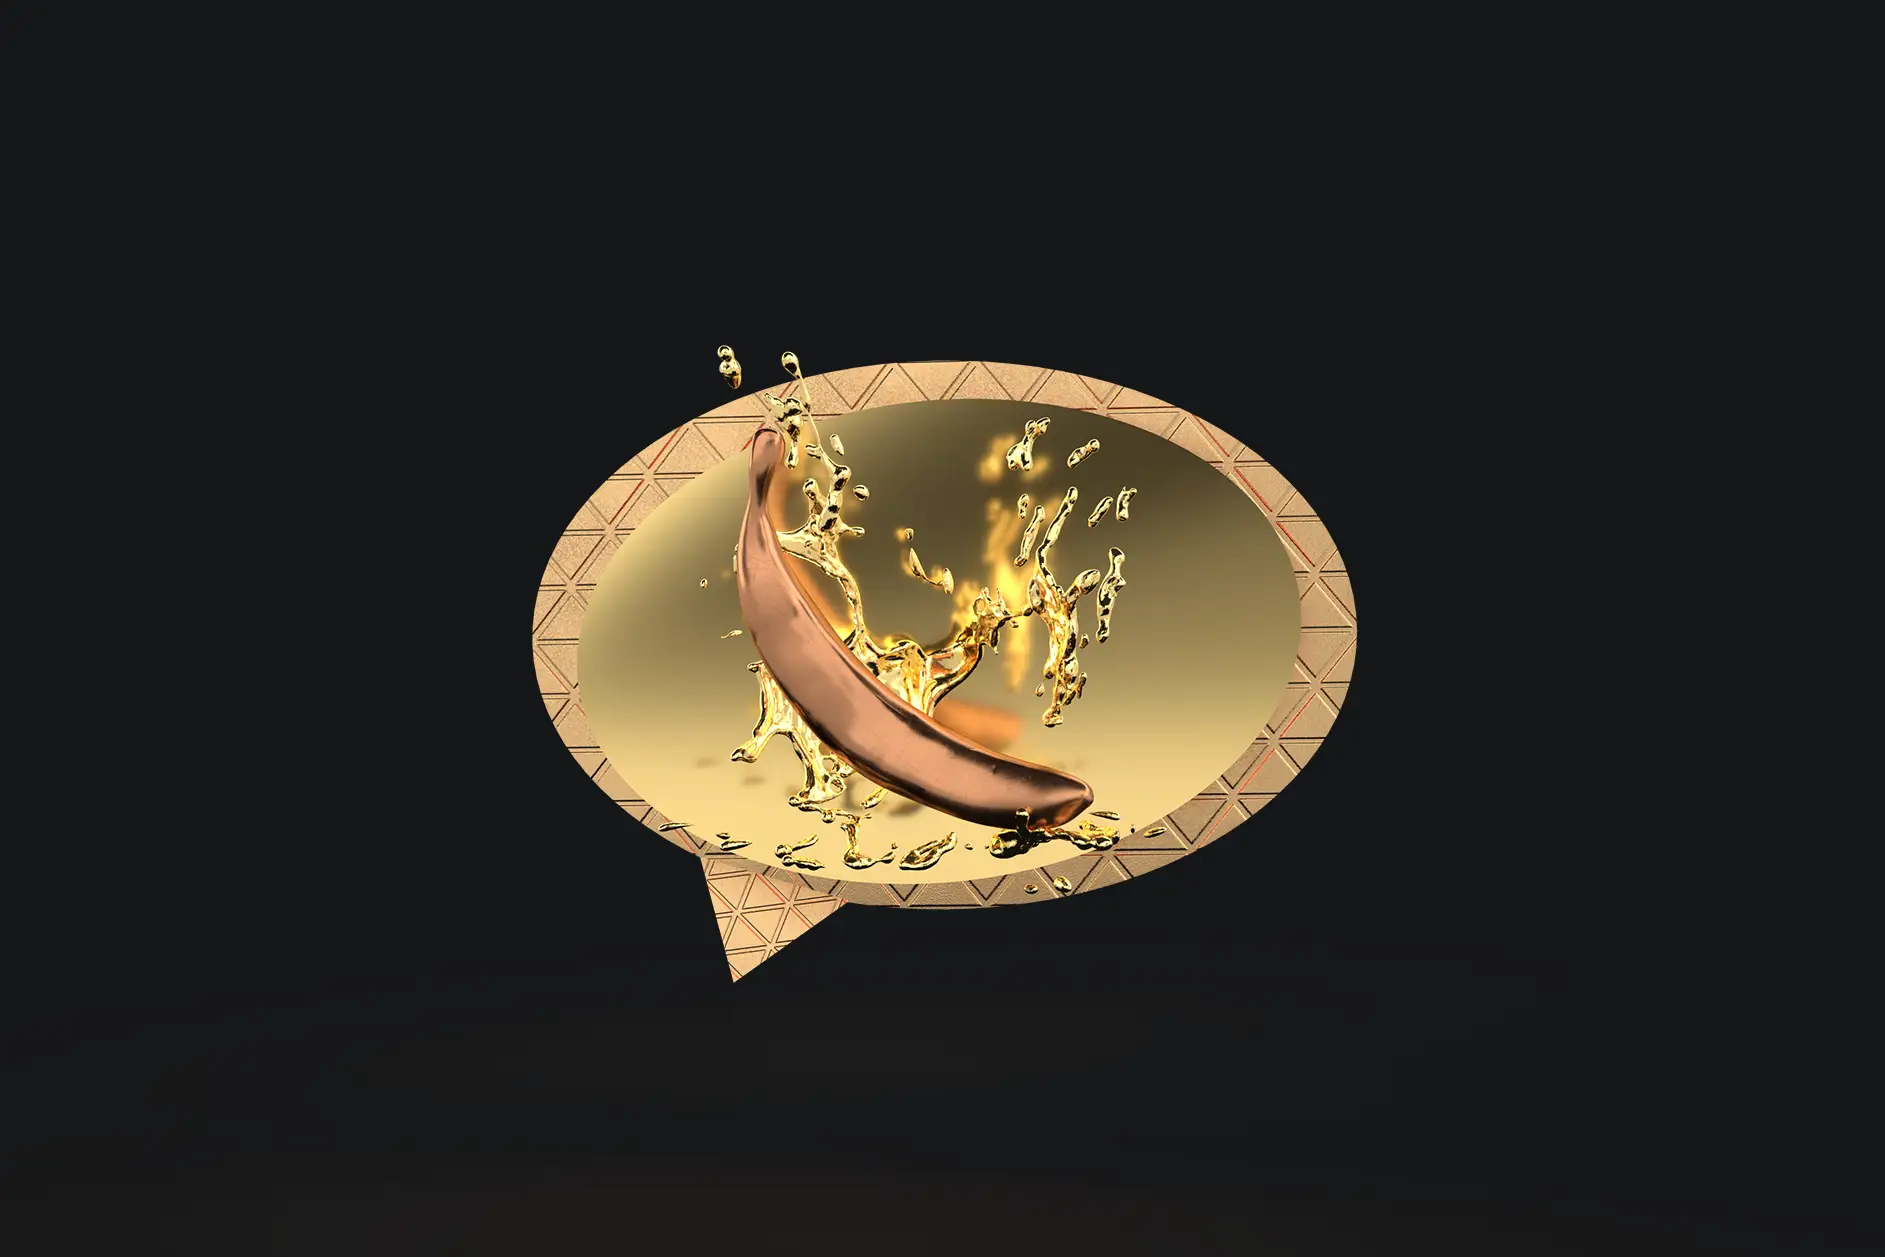 Ein stilisiertes Messenger-Icon aus Gold mit einer platschenden Banane statt einem Telefon